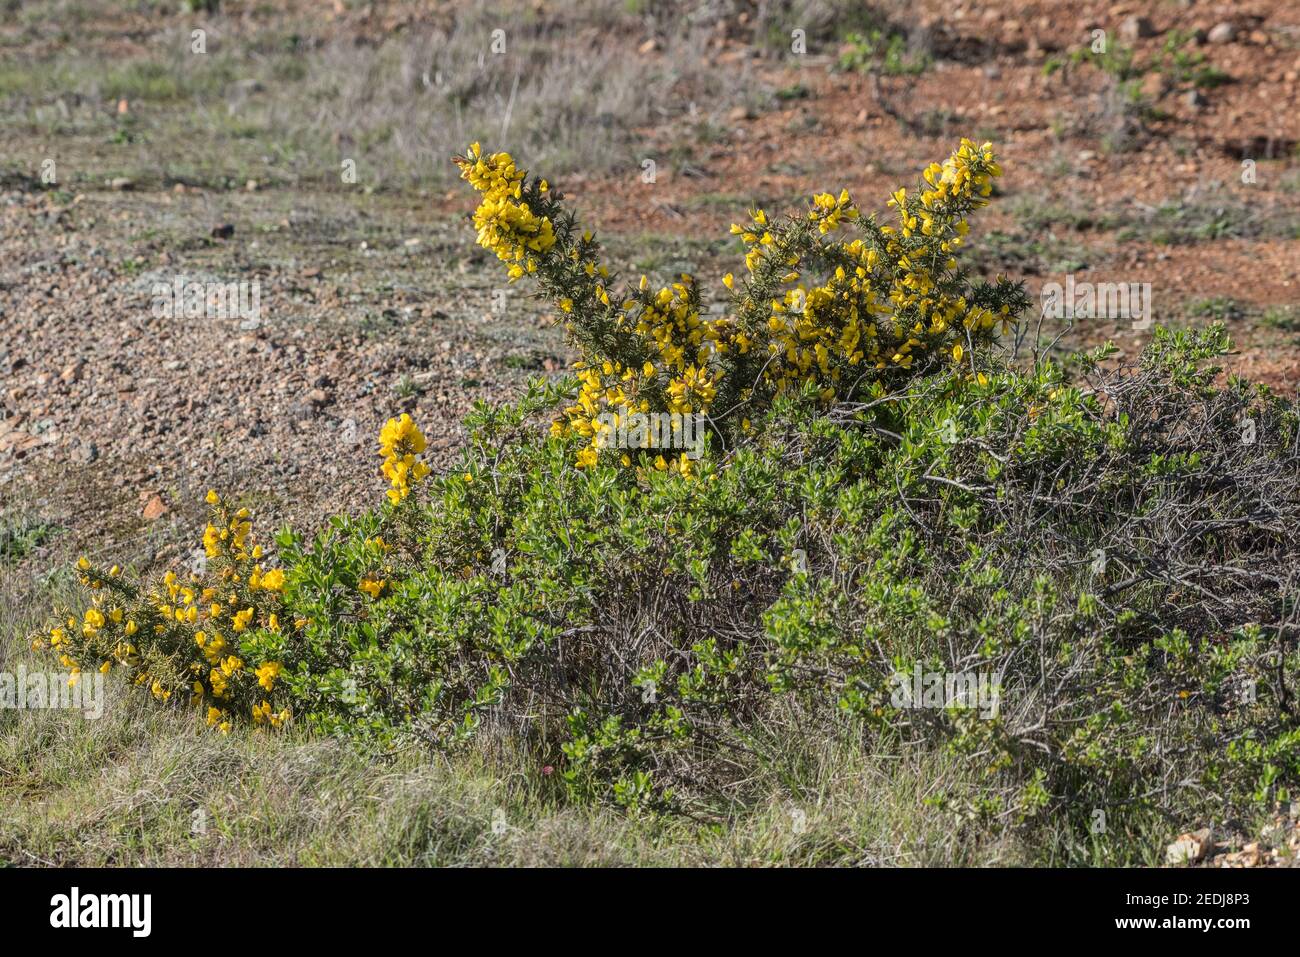 La gola (Ulex europaeus) cresce selvaggia nella Golden gate National Recreation area in California, dove è una specie introdotta non nativa. Foto Stock